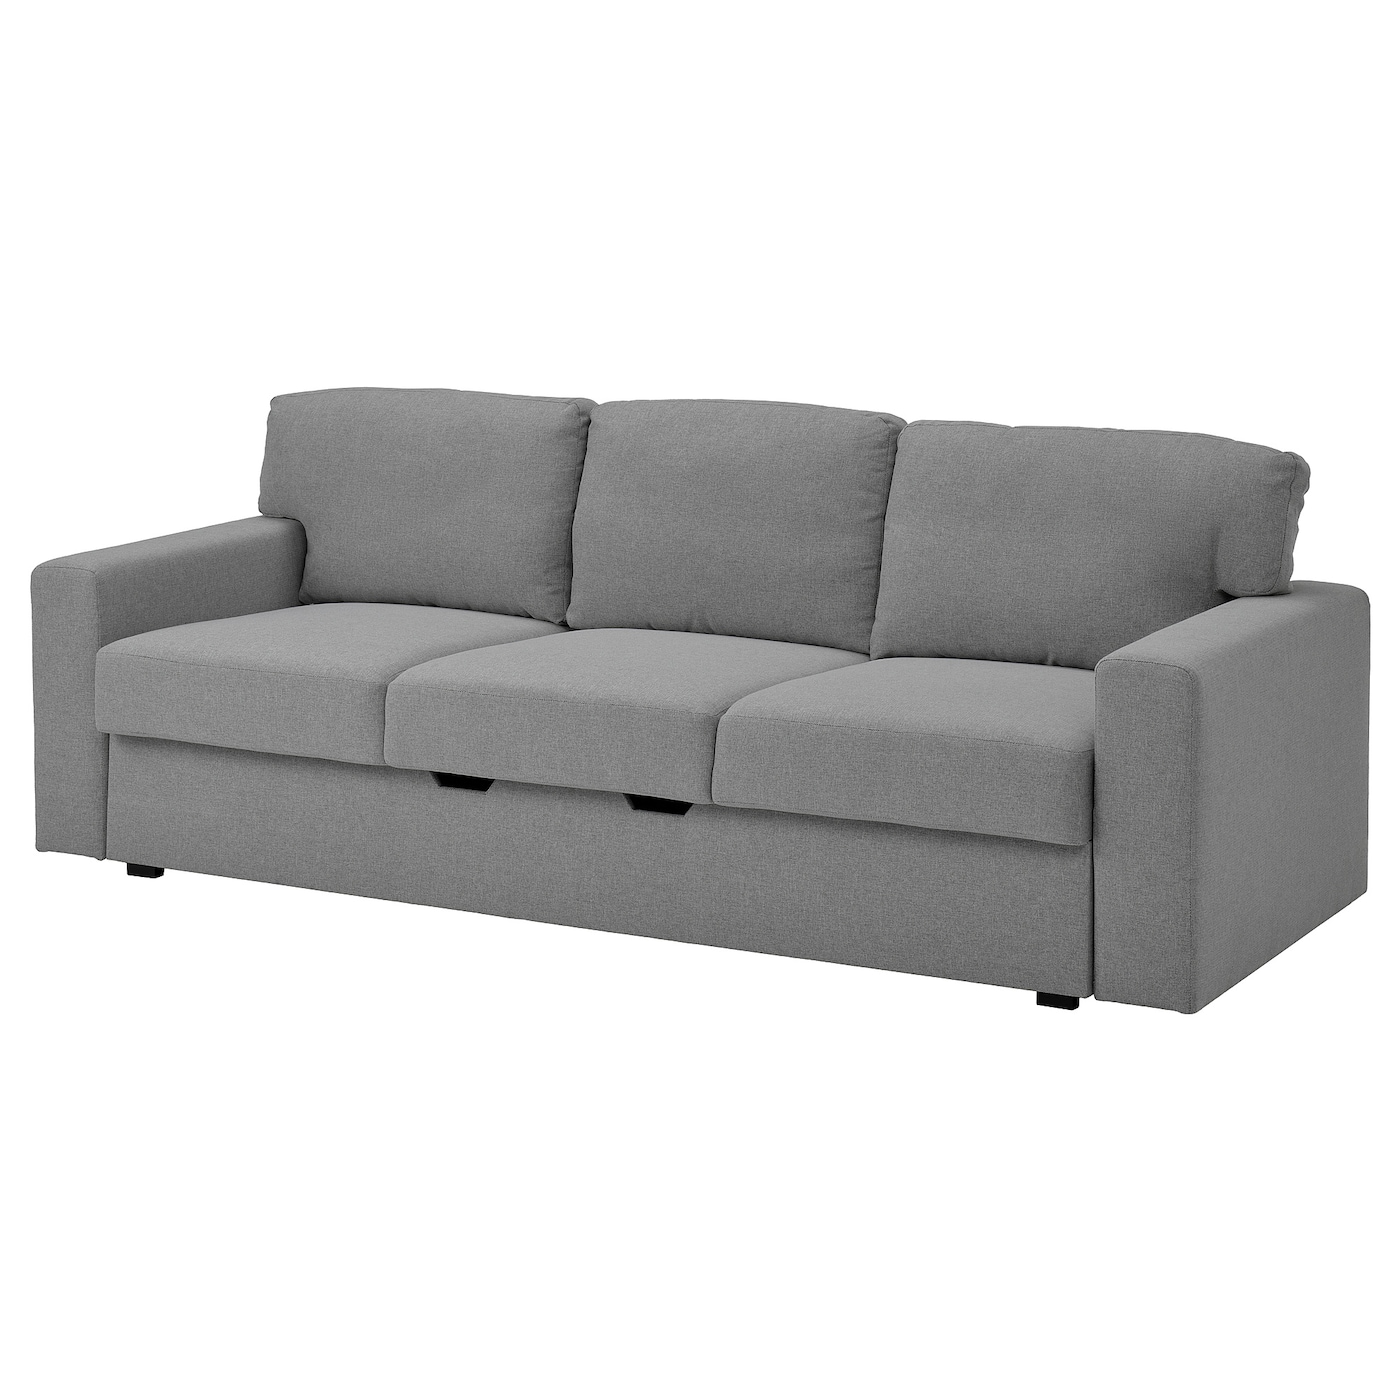 БОРСЛОВ 3-местный диван-кровать, Тибблби бежевый/серый BÅRSLÖV IKEA диван кровать шарм дизайн уют 2 серый